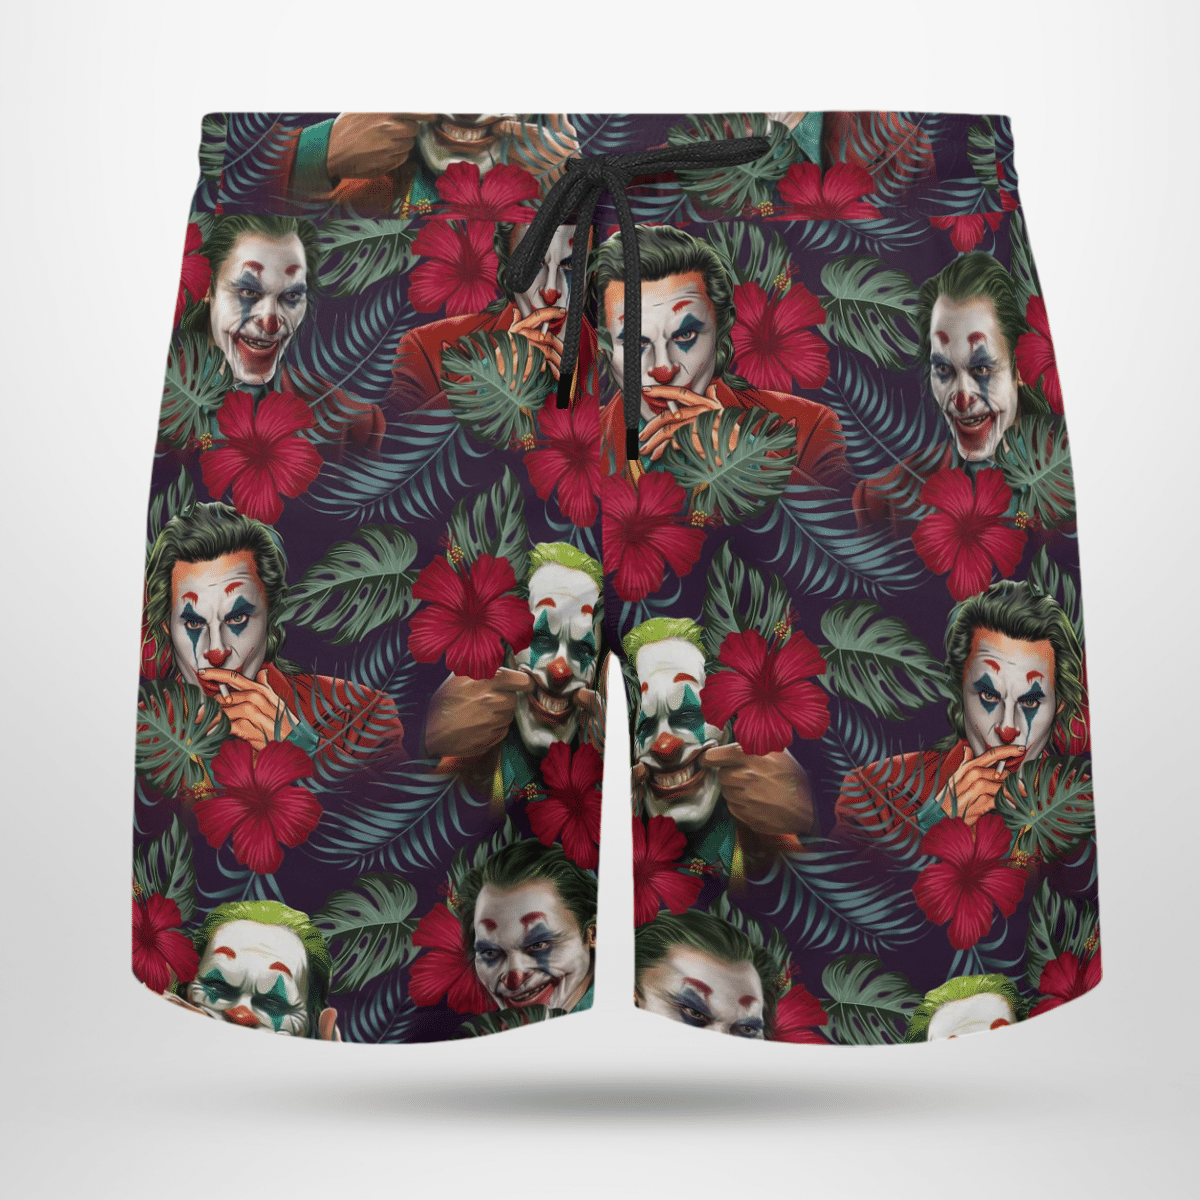 Joker cool Hawaii shirt and short